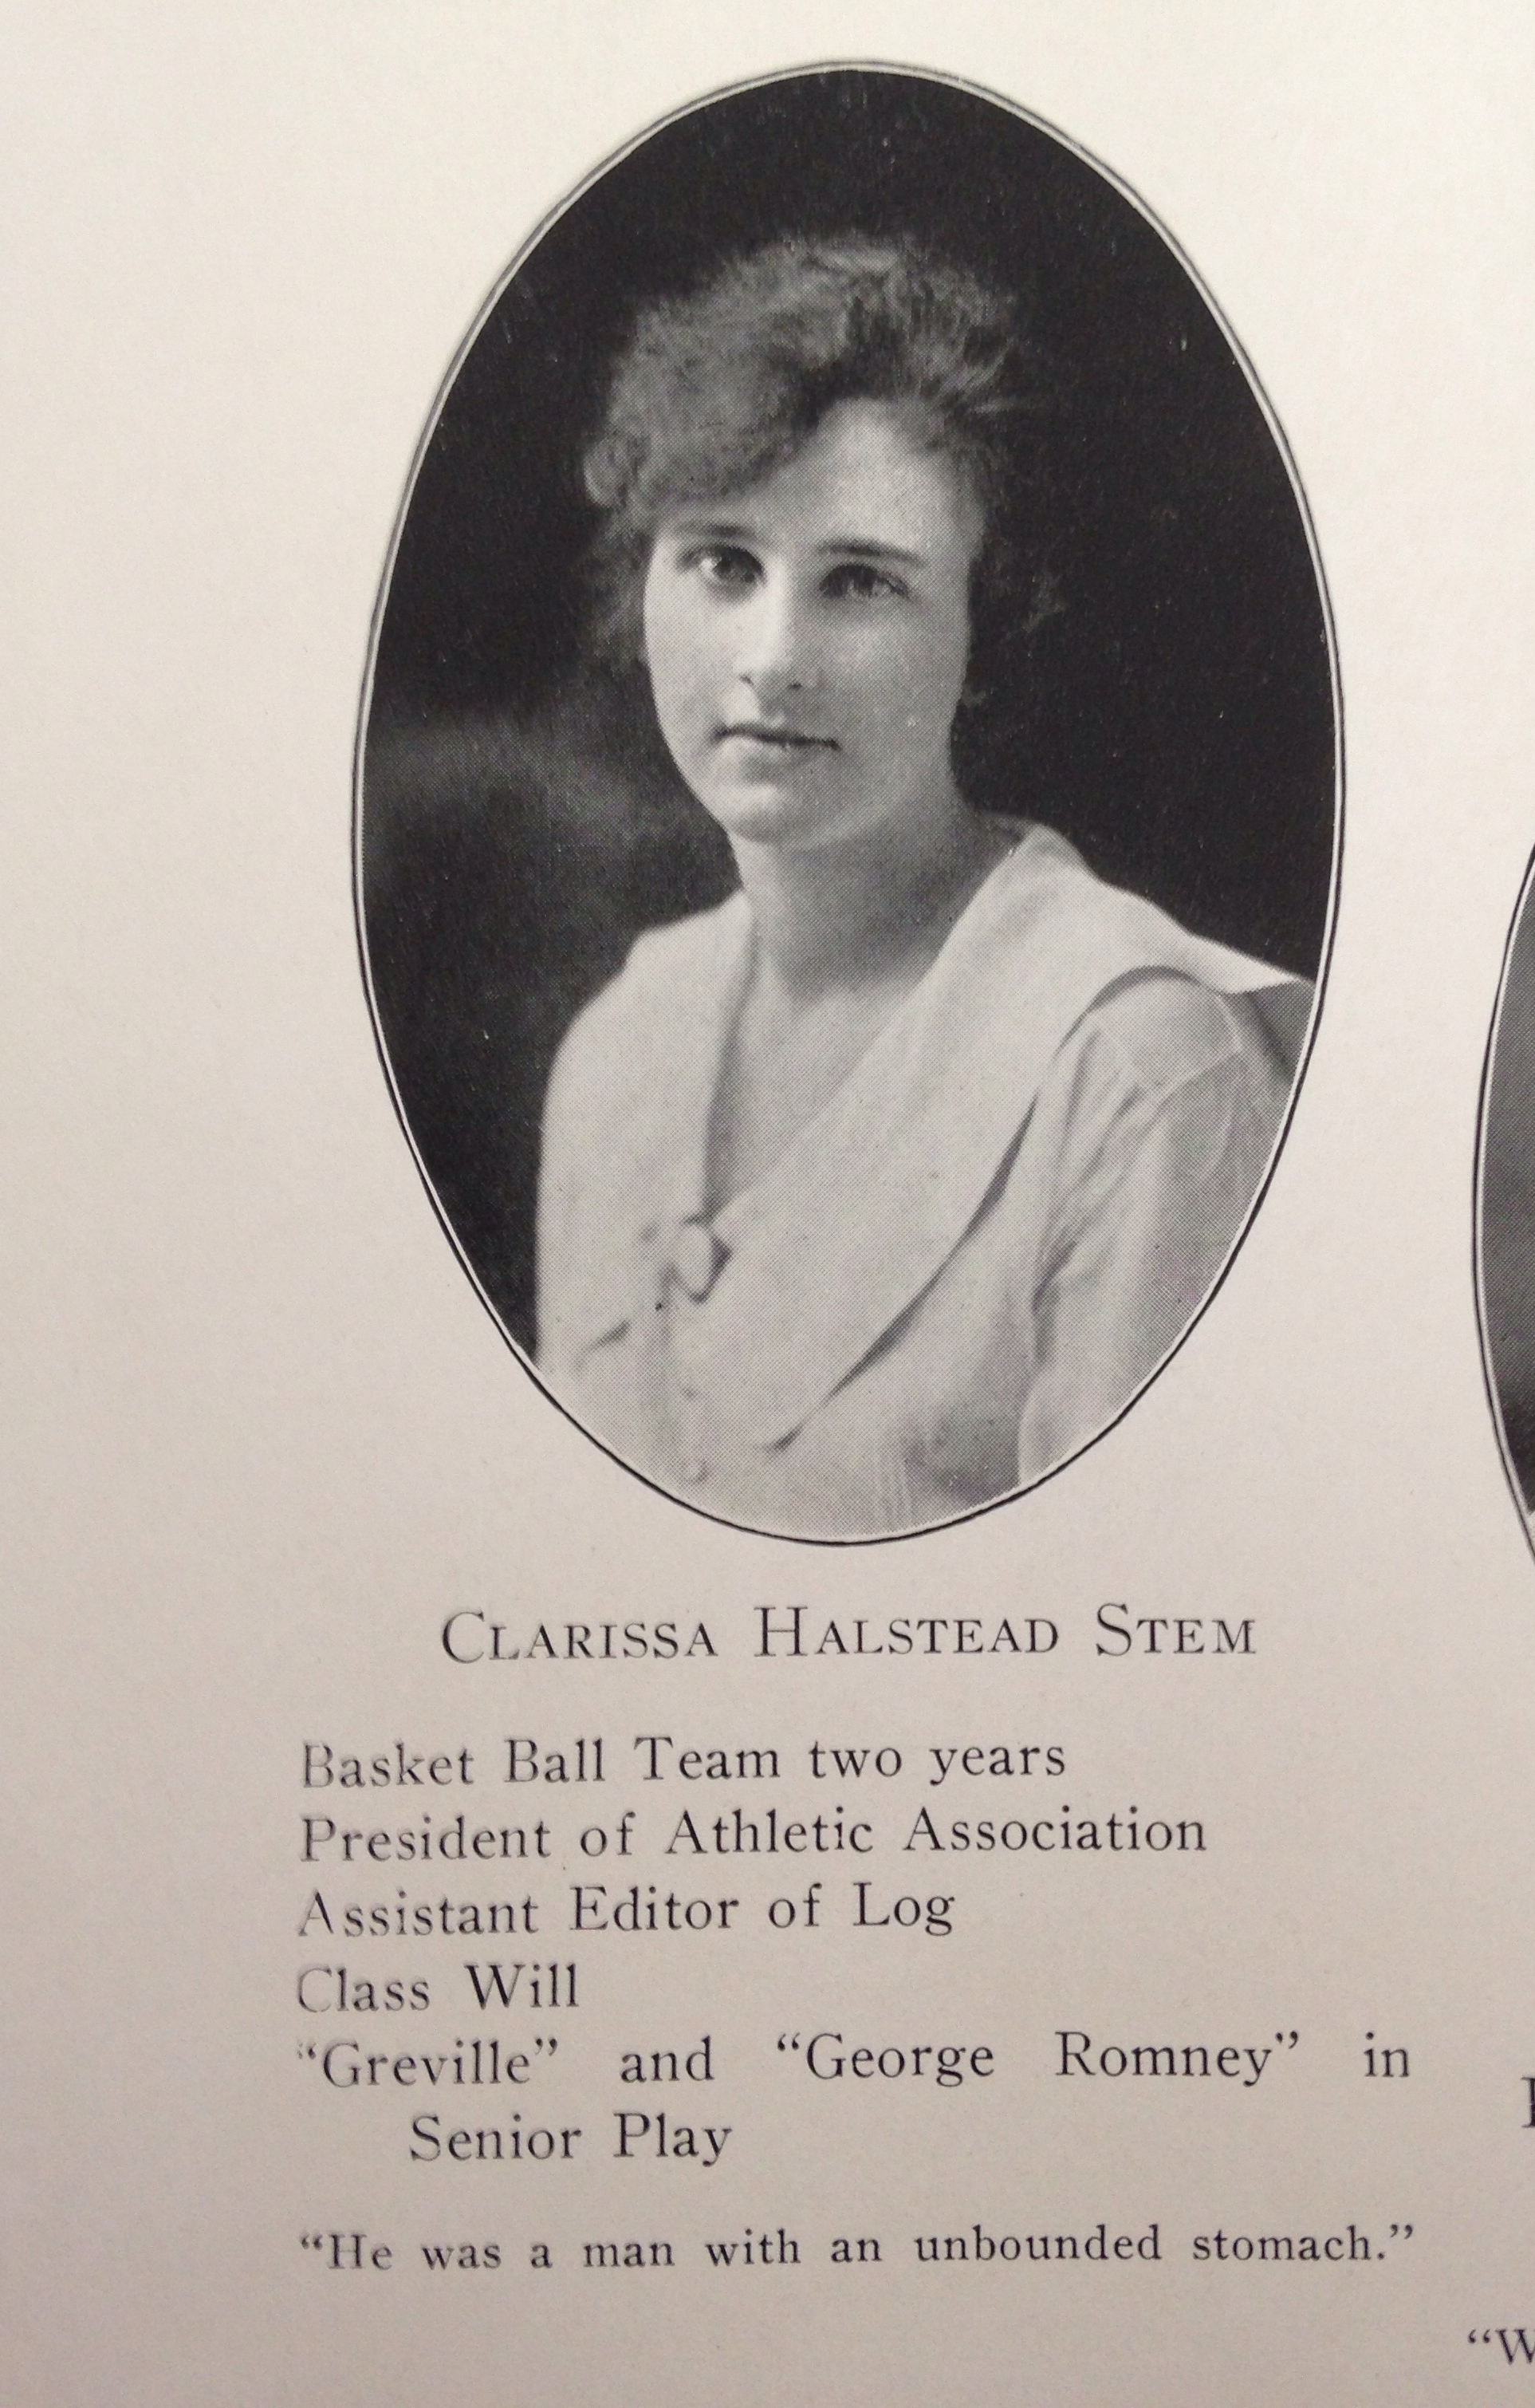 Clarissa Halstead Stem, New Jersey